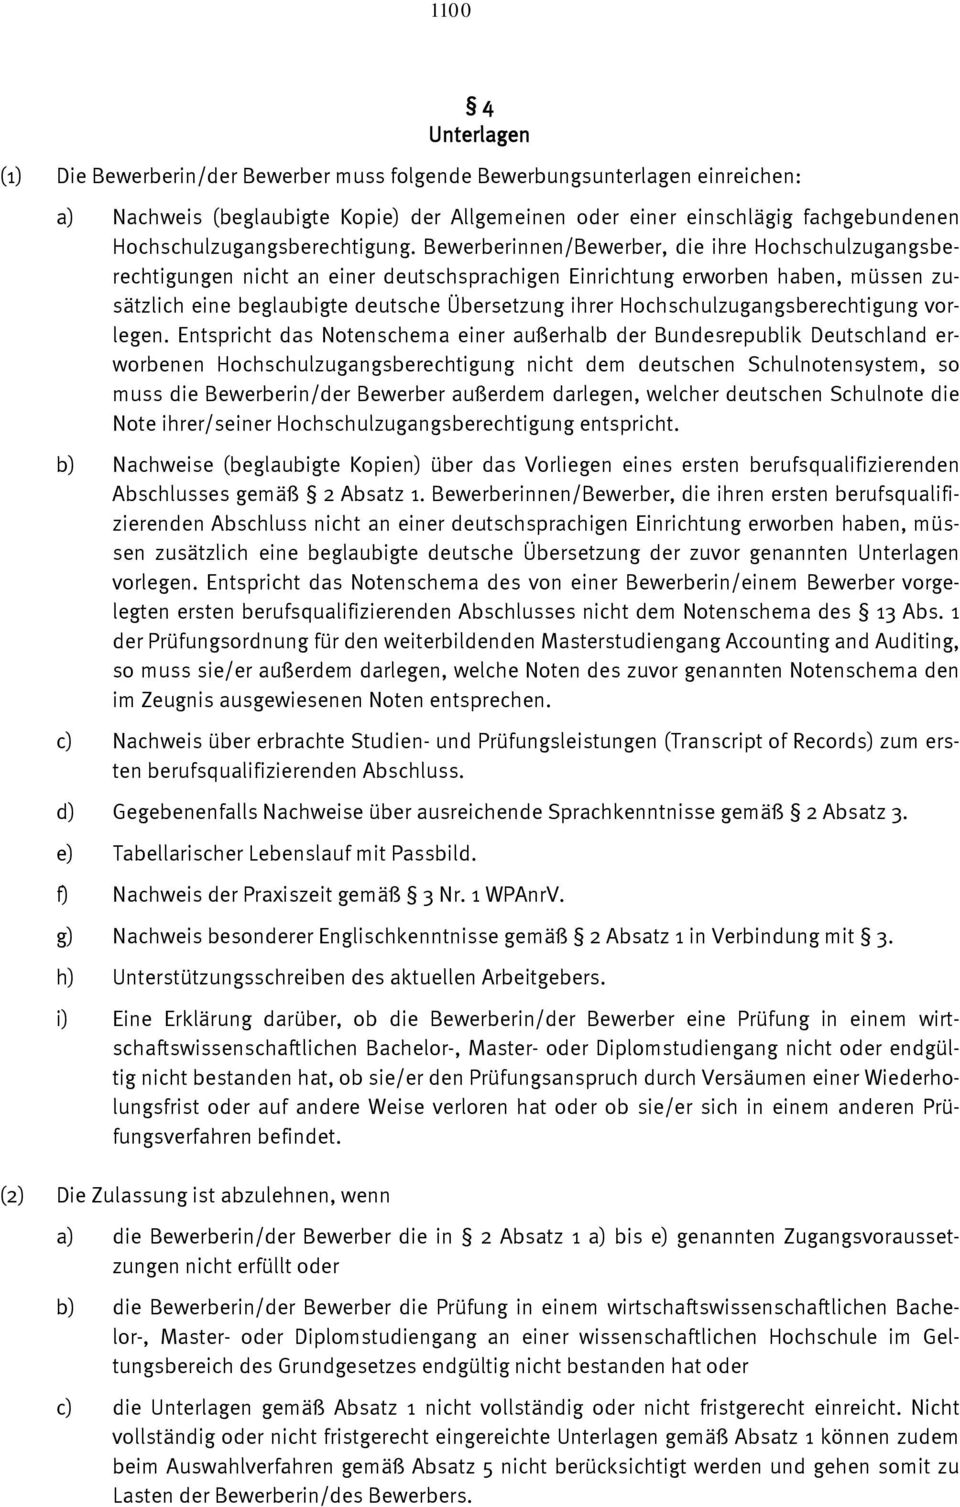 Bewerberinnen/Bewerber, die ihre Hochschulzugangsberechtigungen nicht an einer deutschsprachigen Einrichtung erworben haben, müssen zusätzlich eine beglaubigte deutsche Übersetzung ihrer